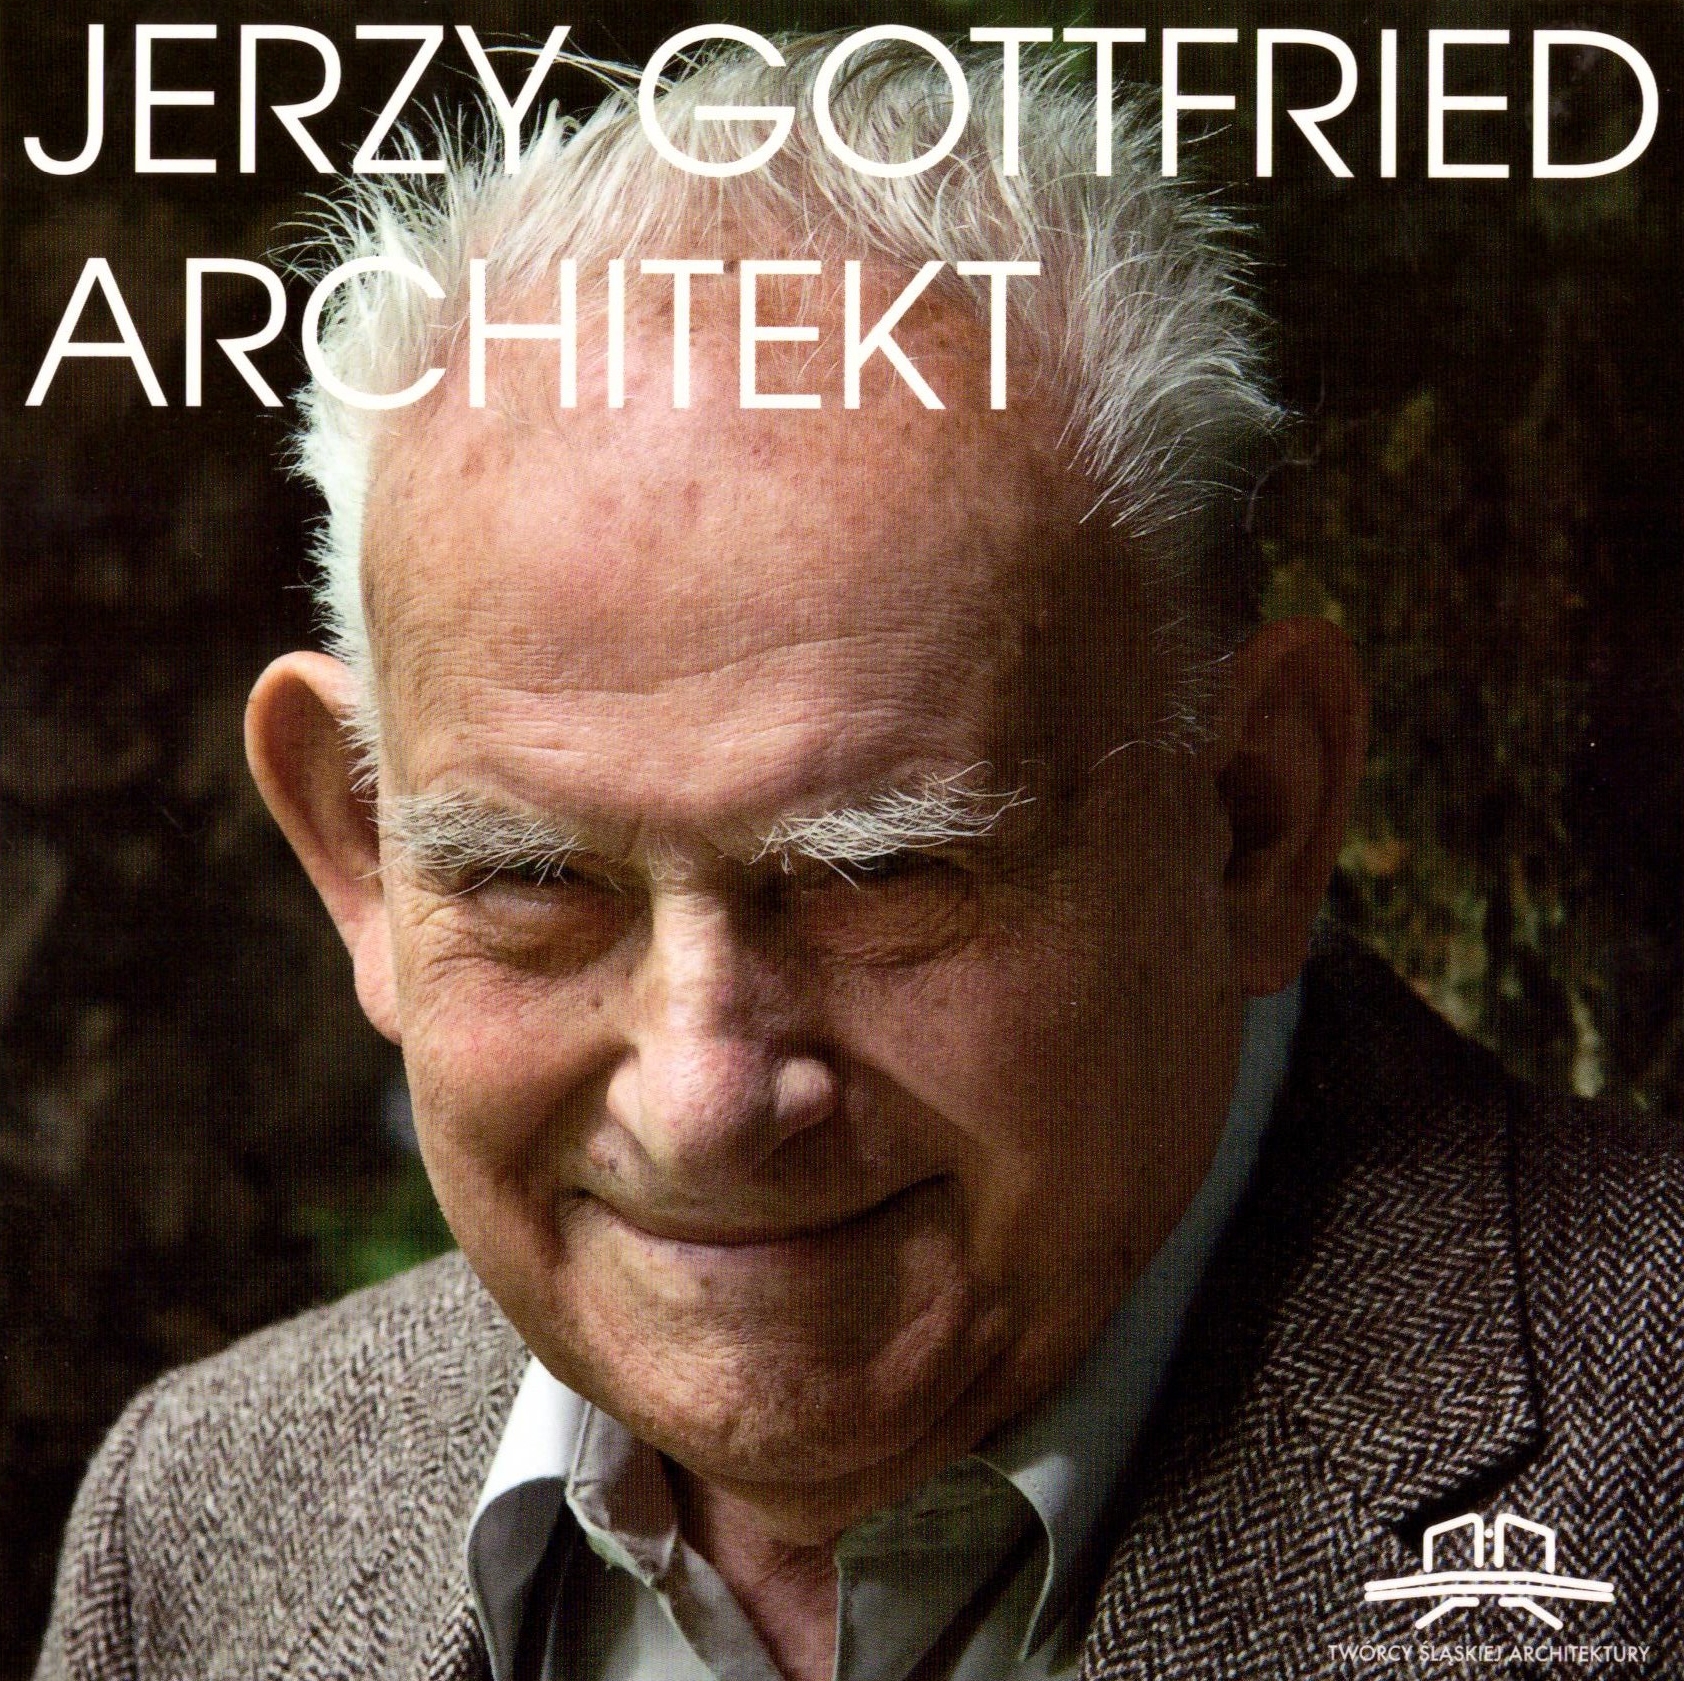 Okładka. Jerzy Gottfried. Architekt